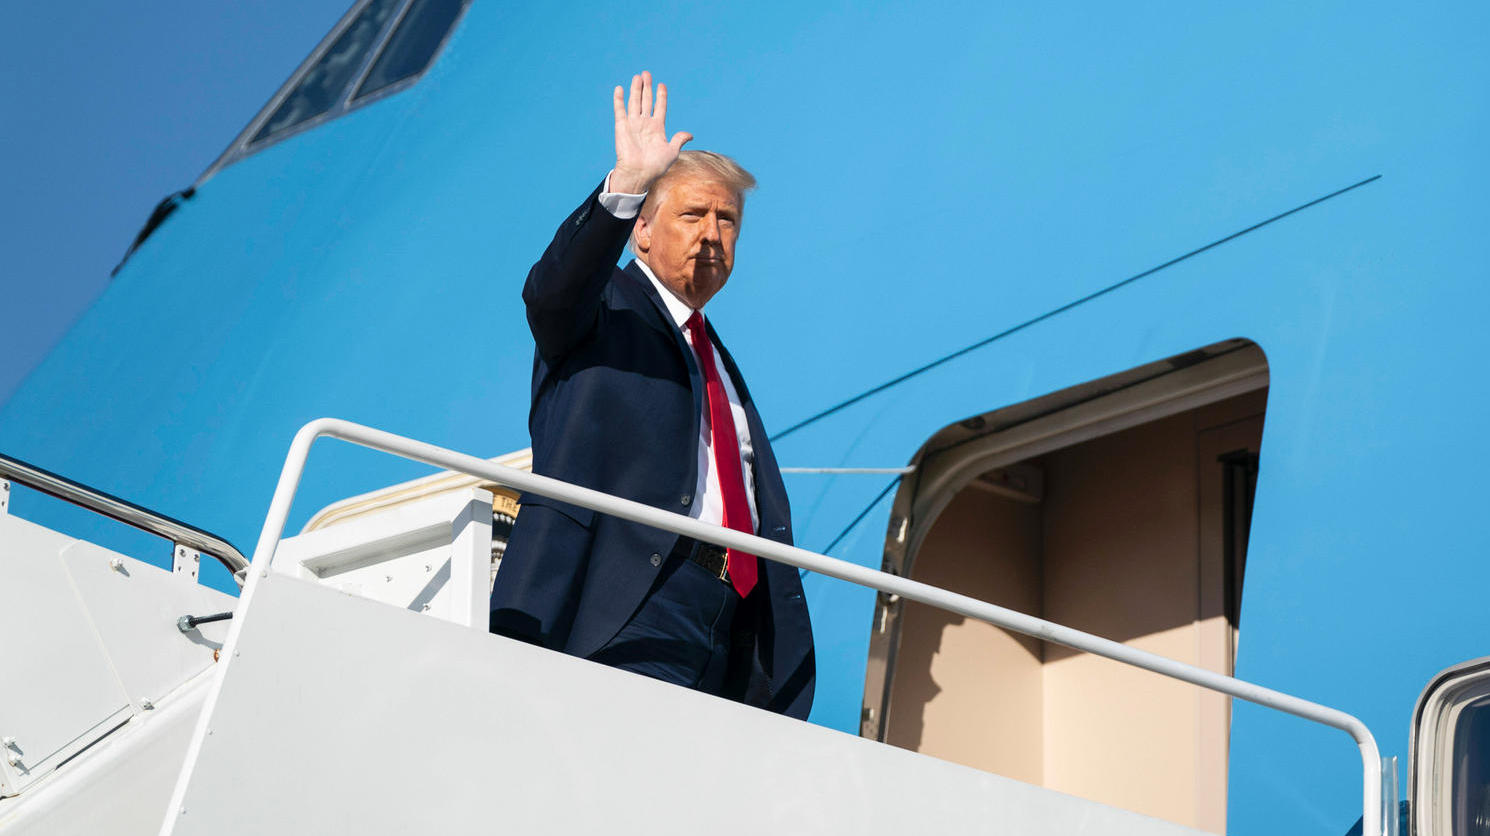 Trump "flieht" mit der Air Force One nach Florida